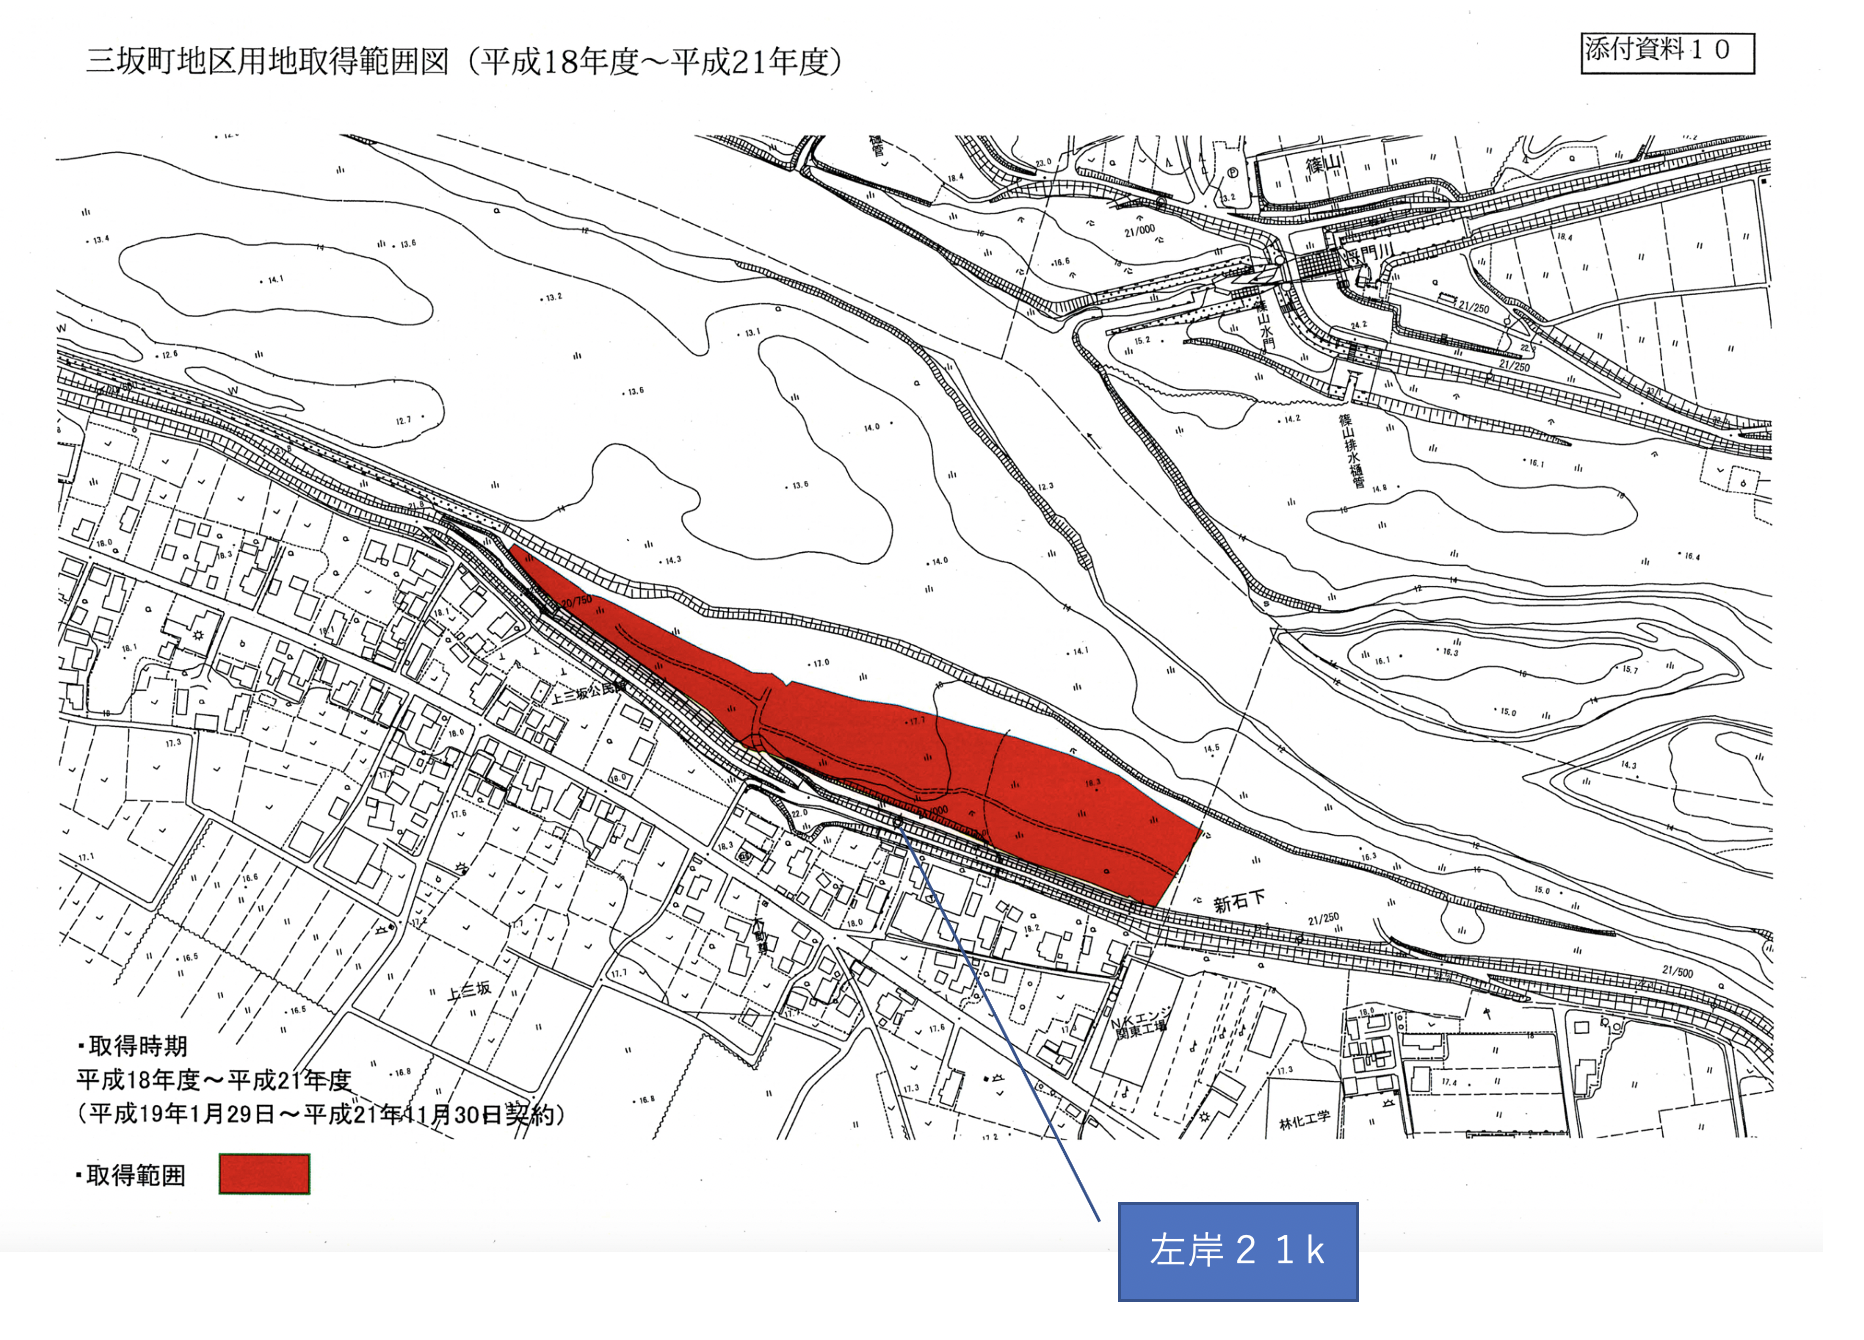 三坂町地区用地取得範囲図